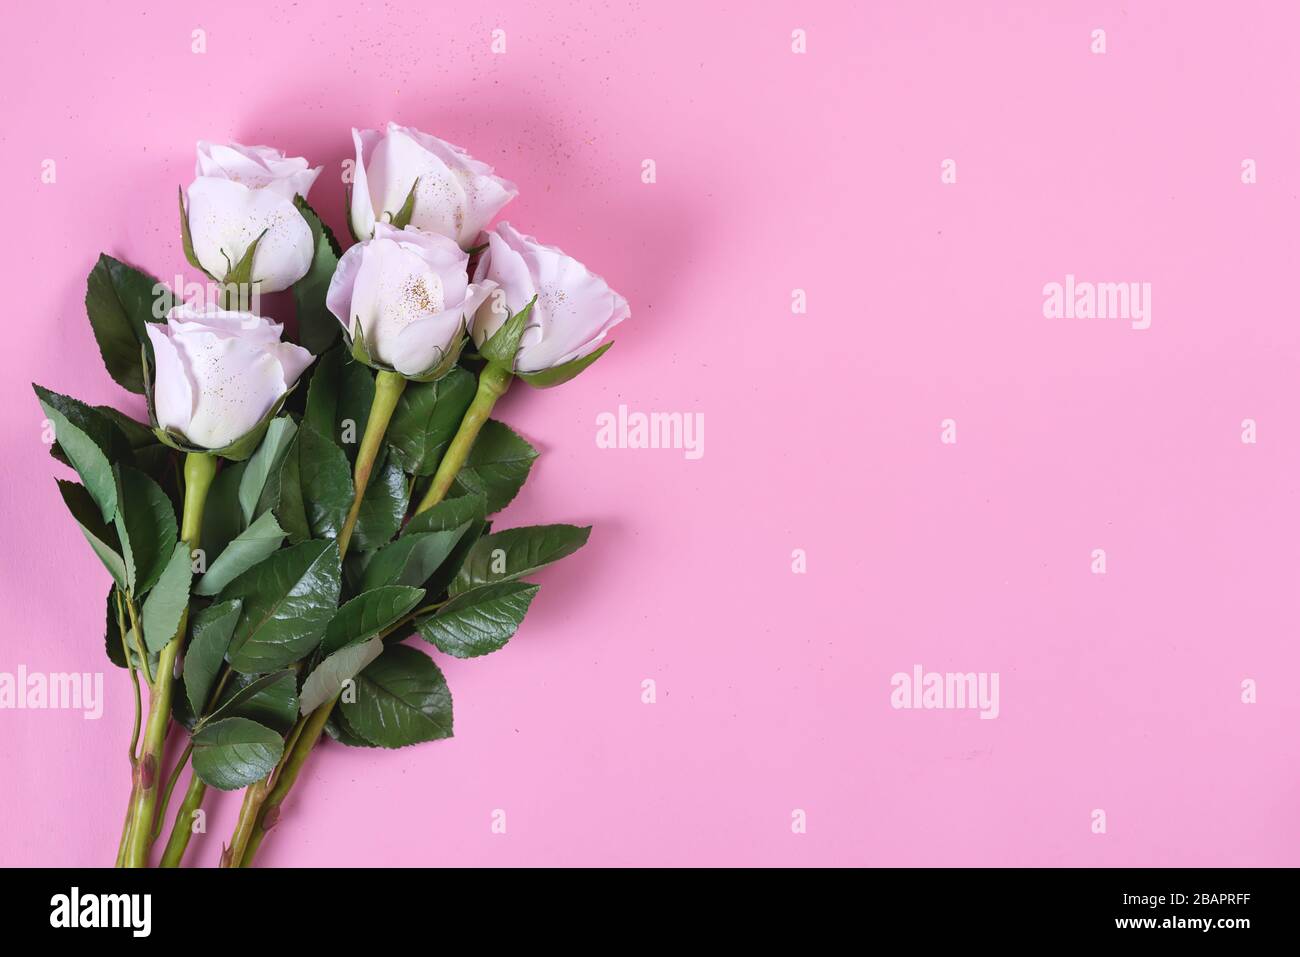 Rosa Rosen Blumen mit goldenem Glitter auf pinkfarbenem Grund, flach gelegt Stockfoto